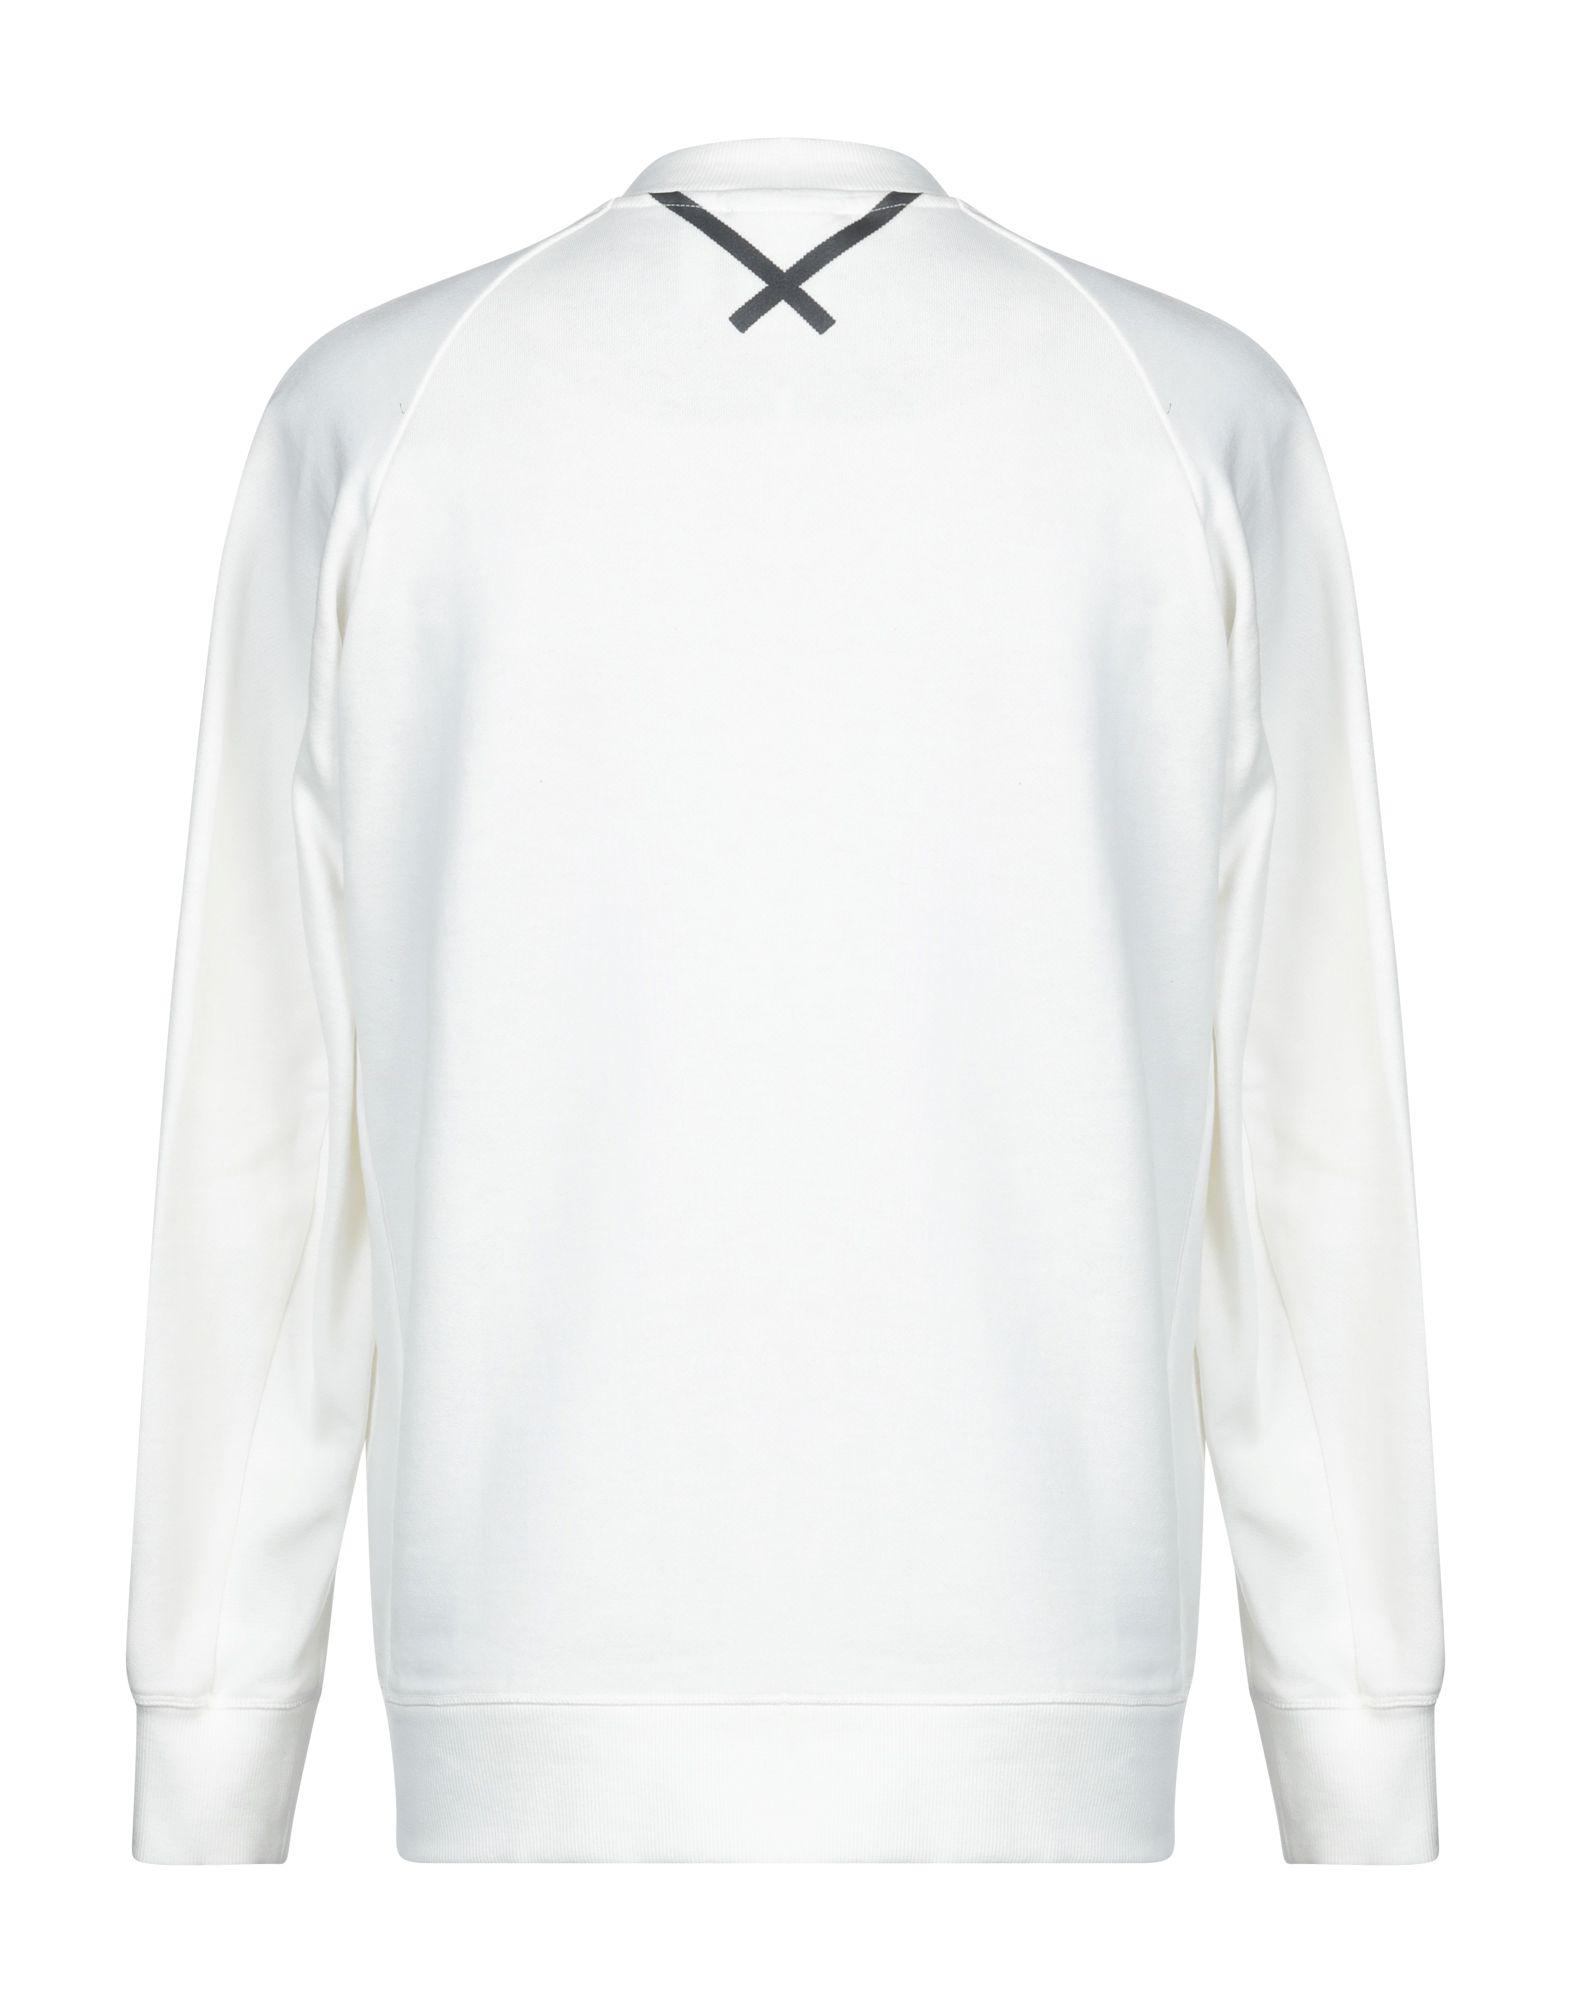 adidas Originals Cotton Sweatshirt in White for Men - Lyst